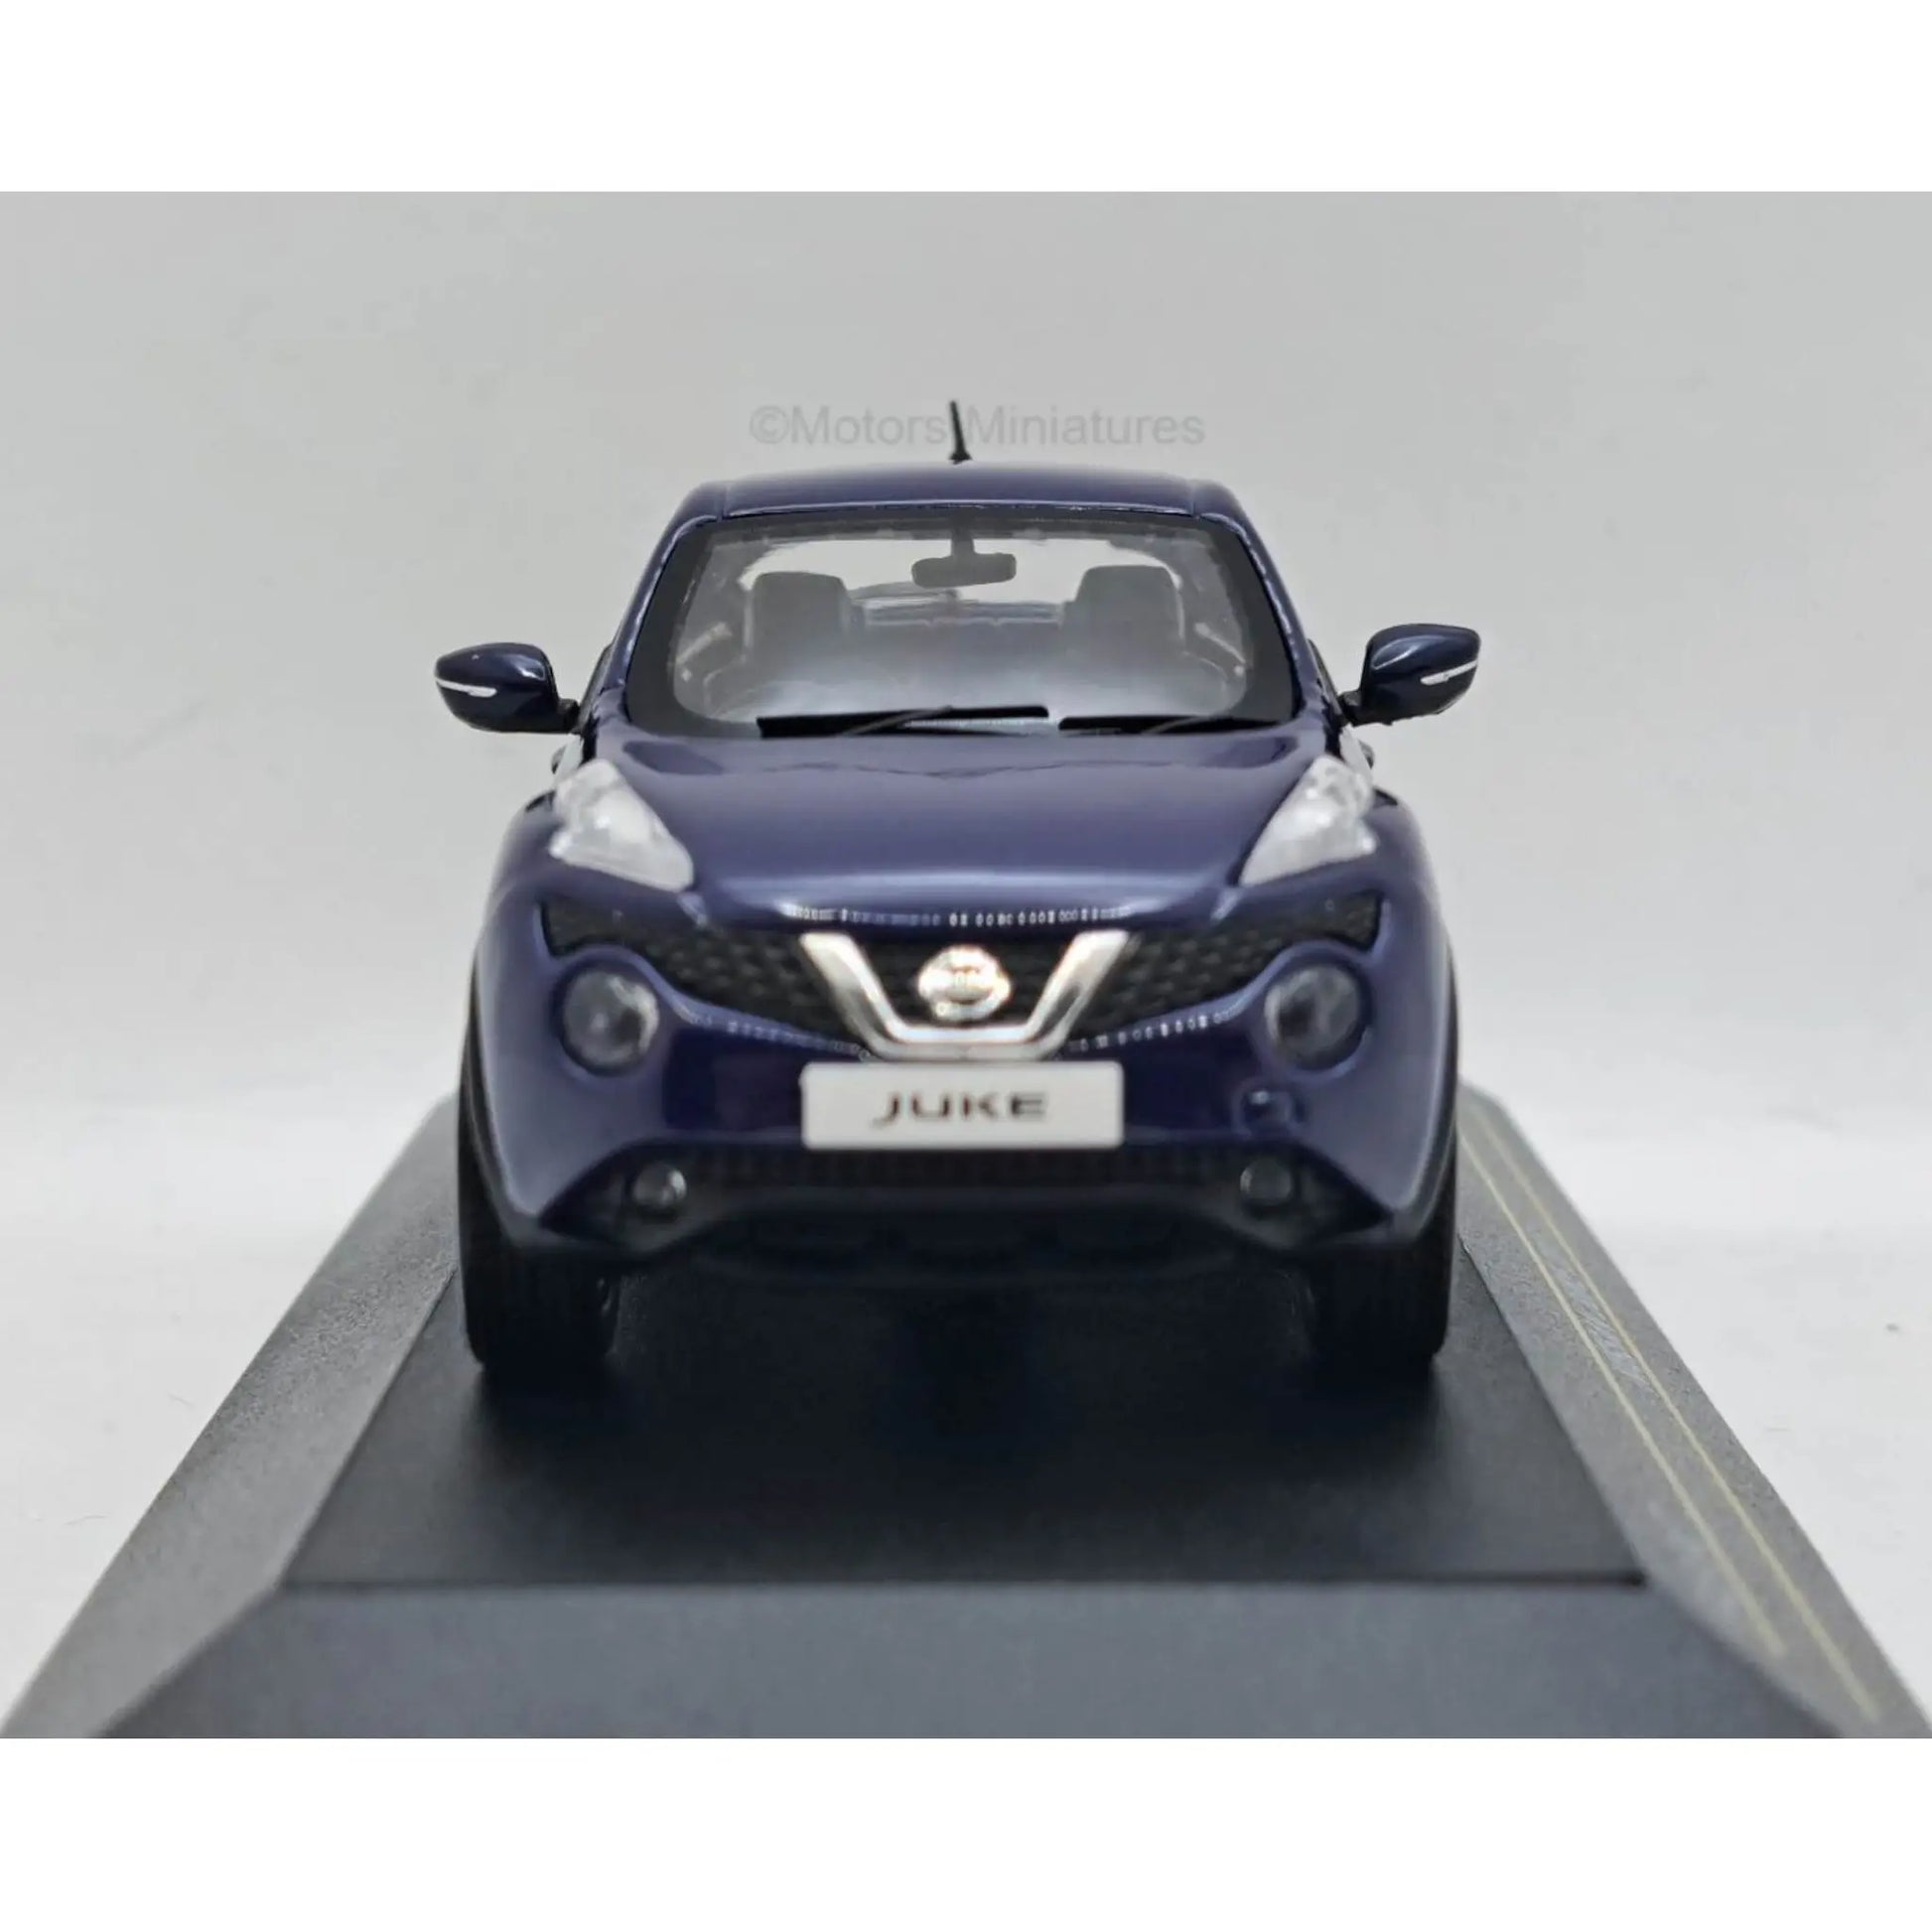 Nissan Juke RHD 2015 First 43 1/43 | Motors Miniatures